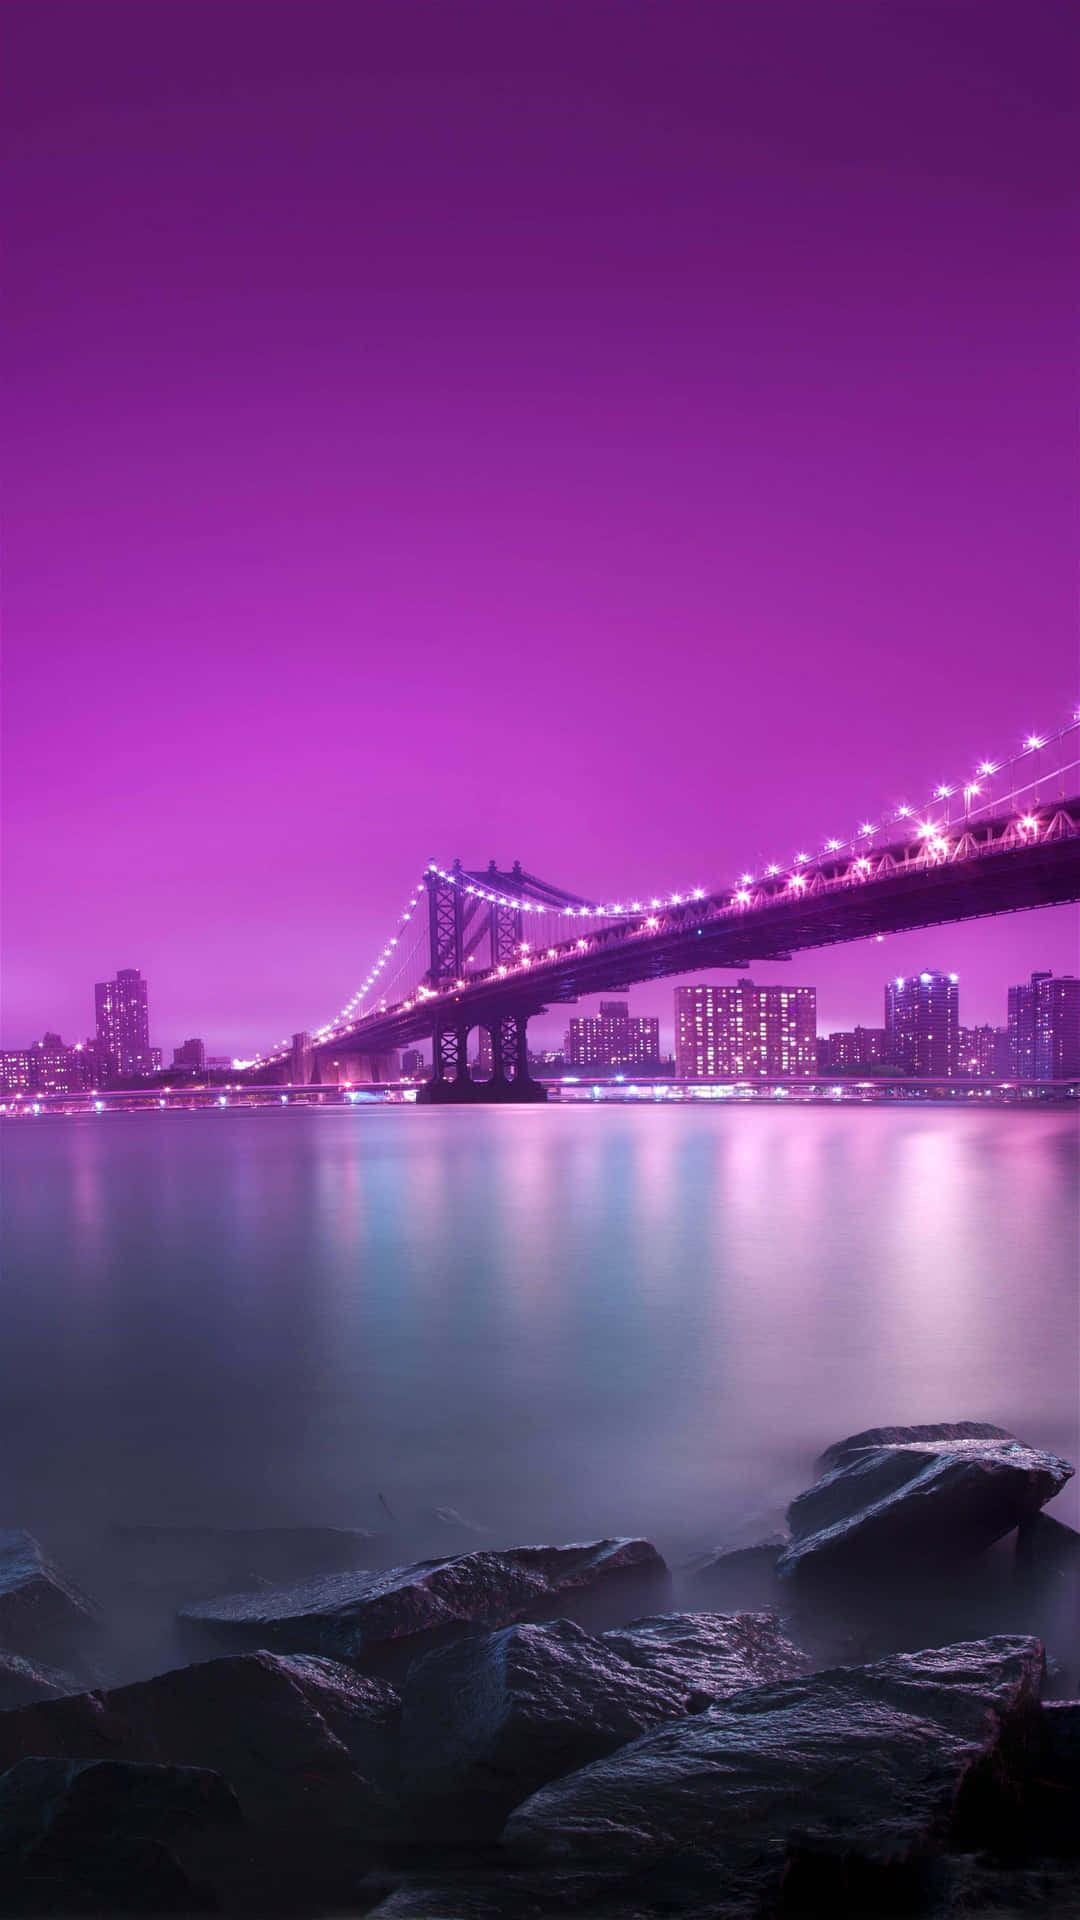 A Purple Sky With A Bridge And Rocks